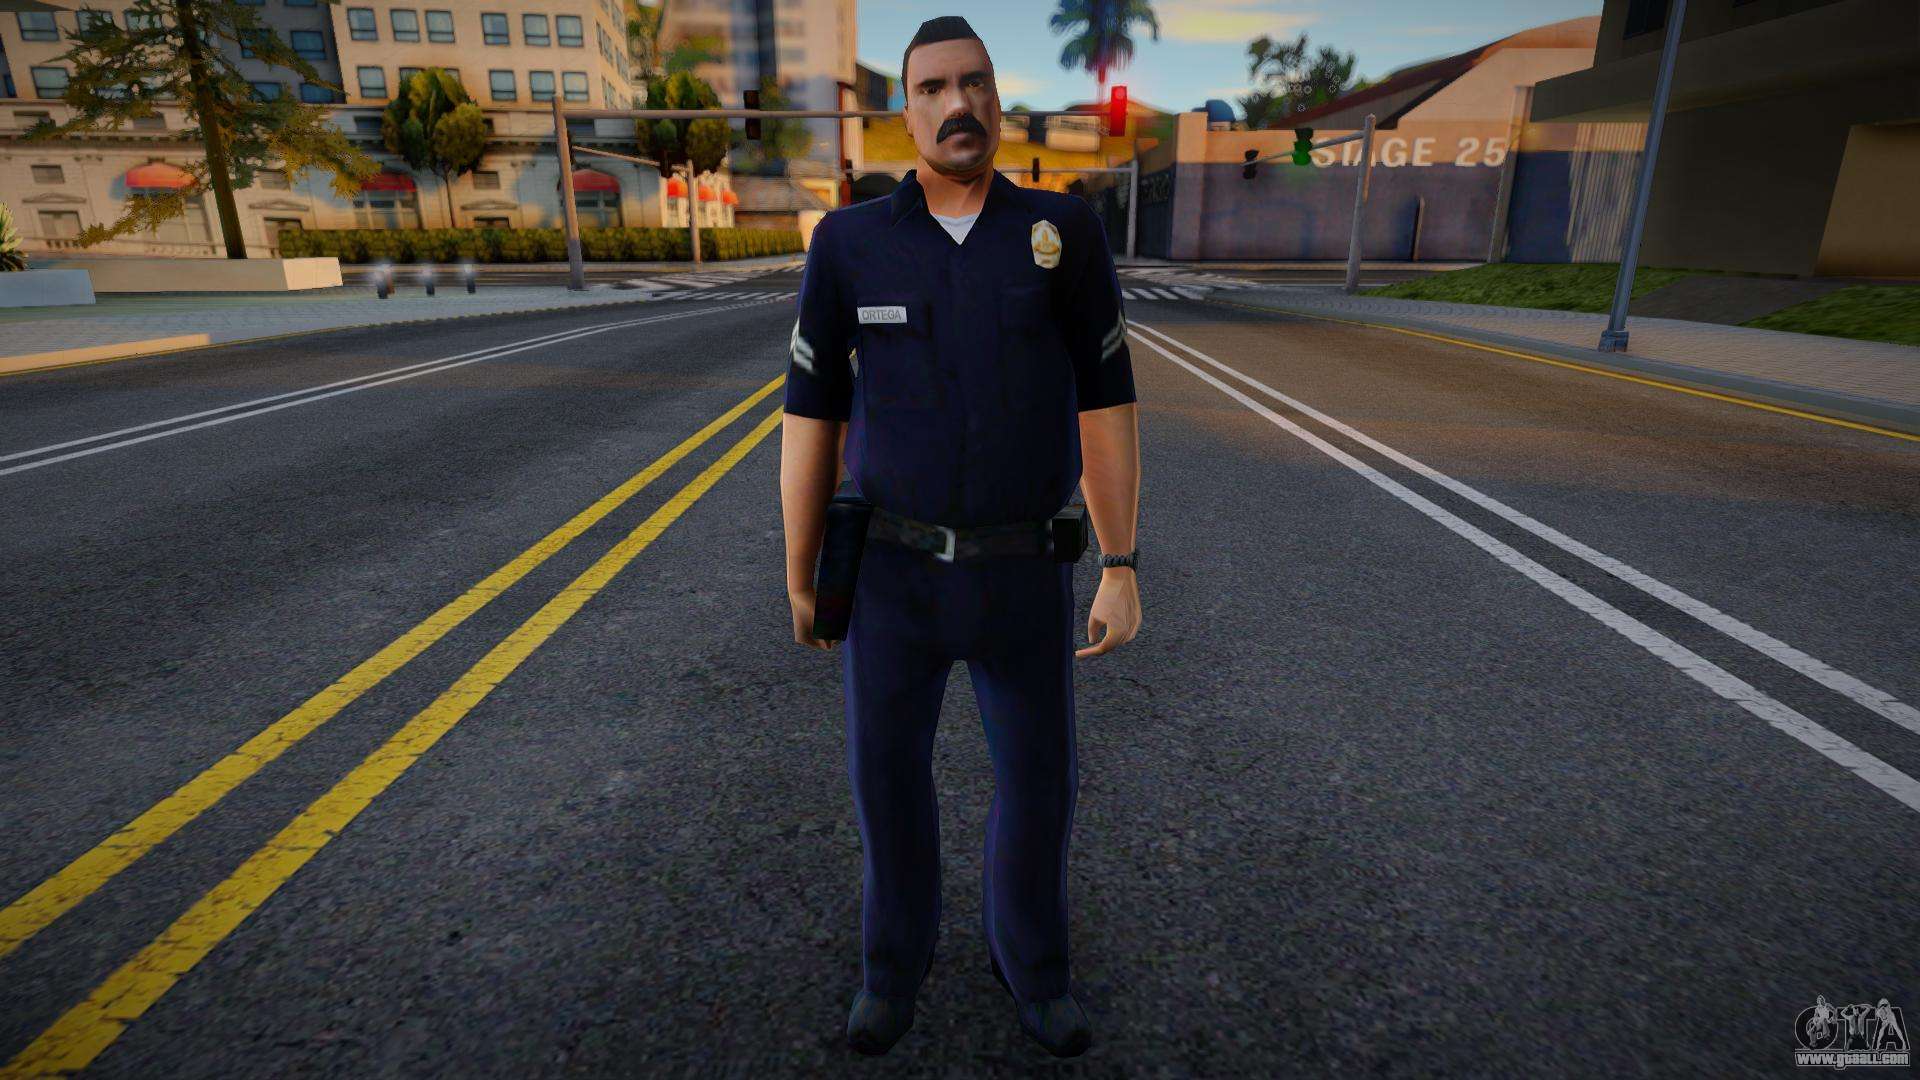 Los Santos Police - Patrol 3 for GTA San Andreas